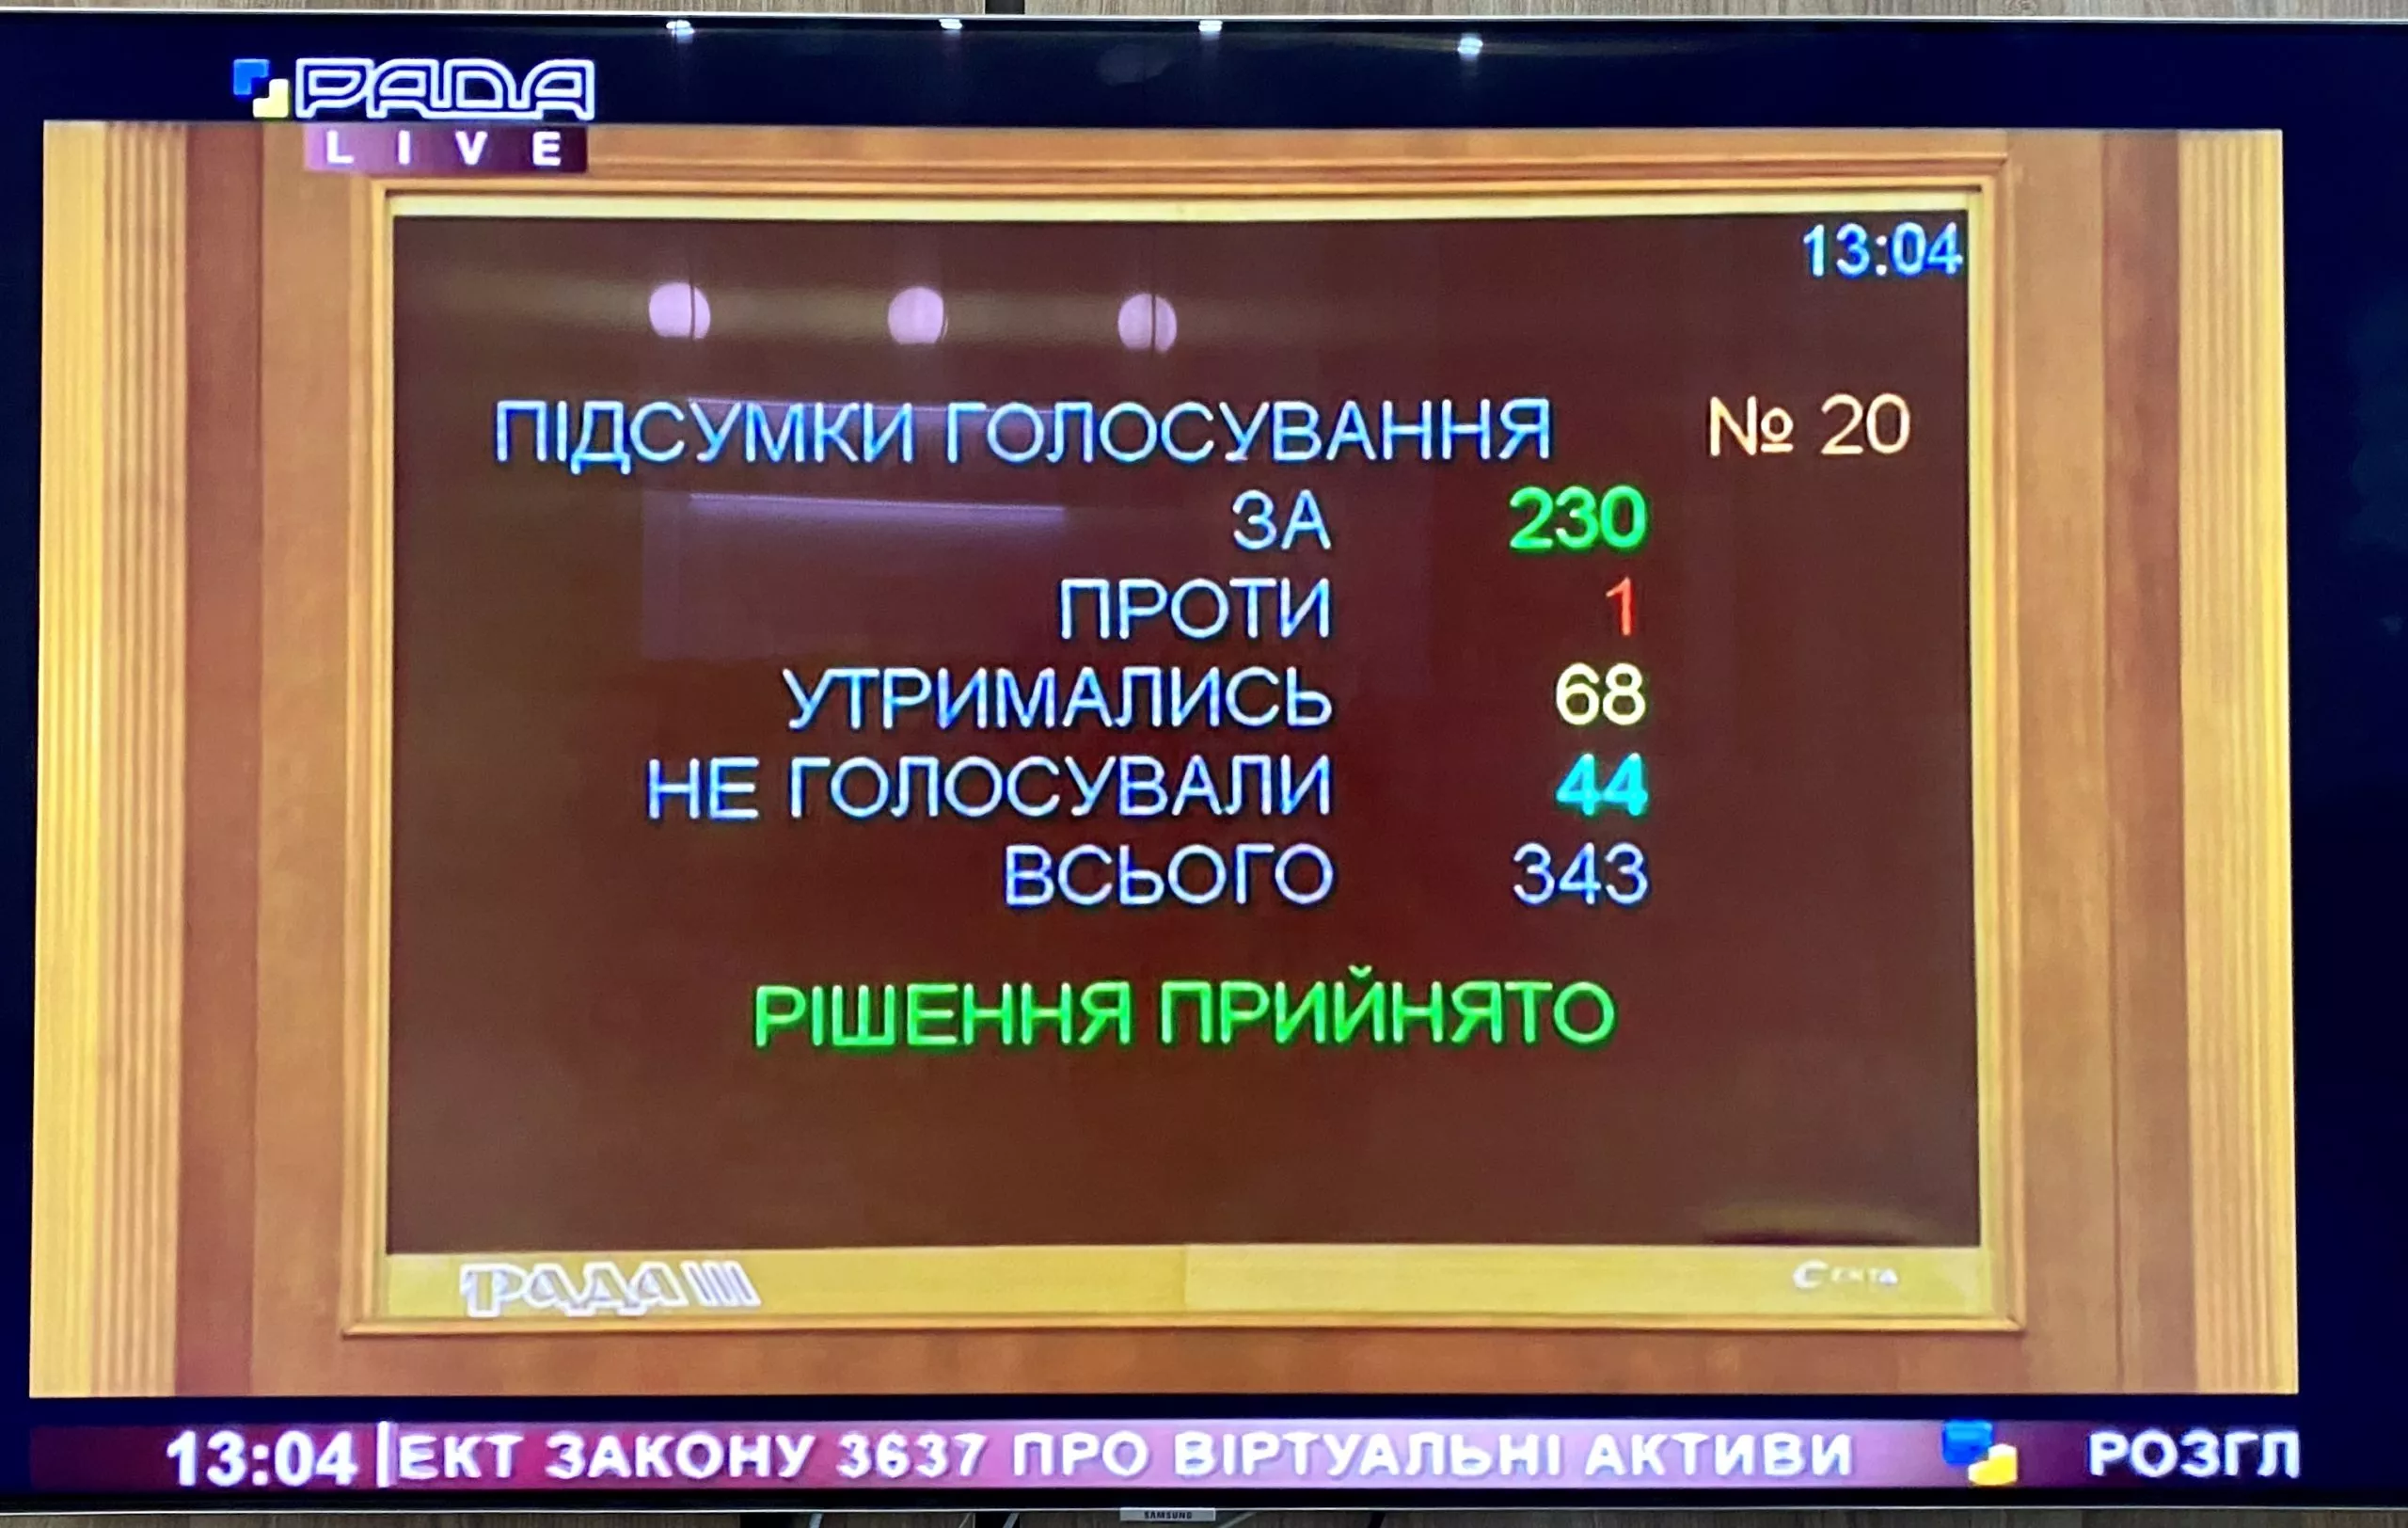 Верховная Рада Украины приняла законопроект «О виртуальных активах» в первом чтении